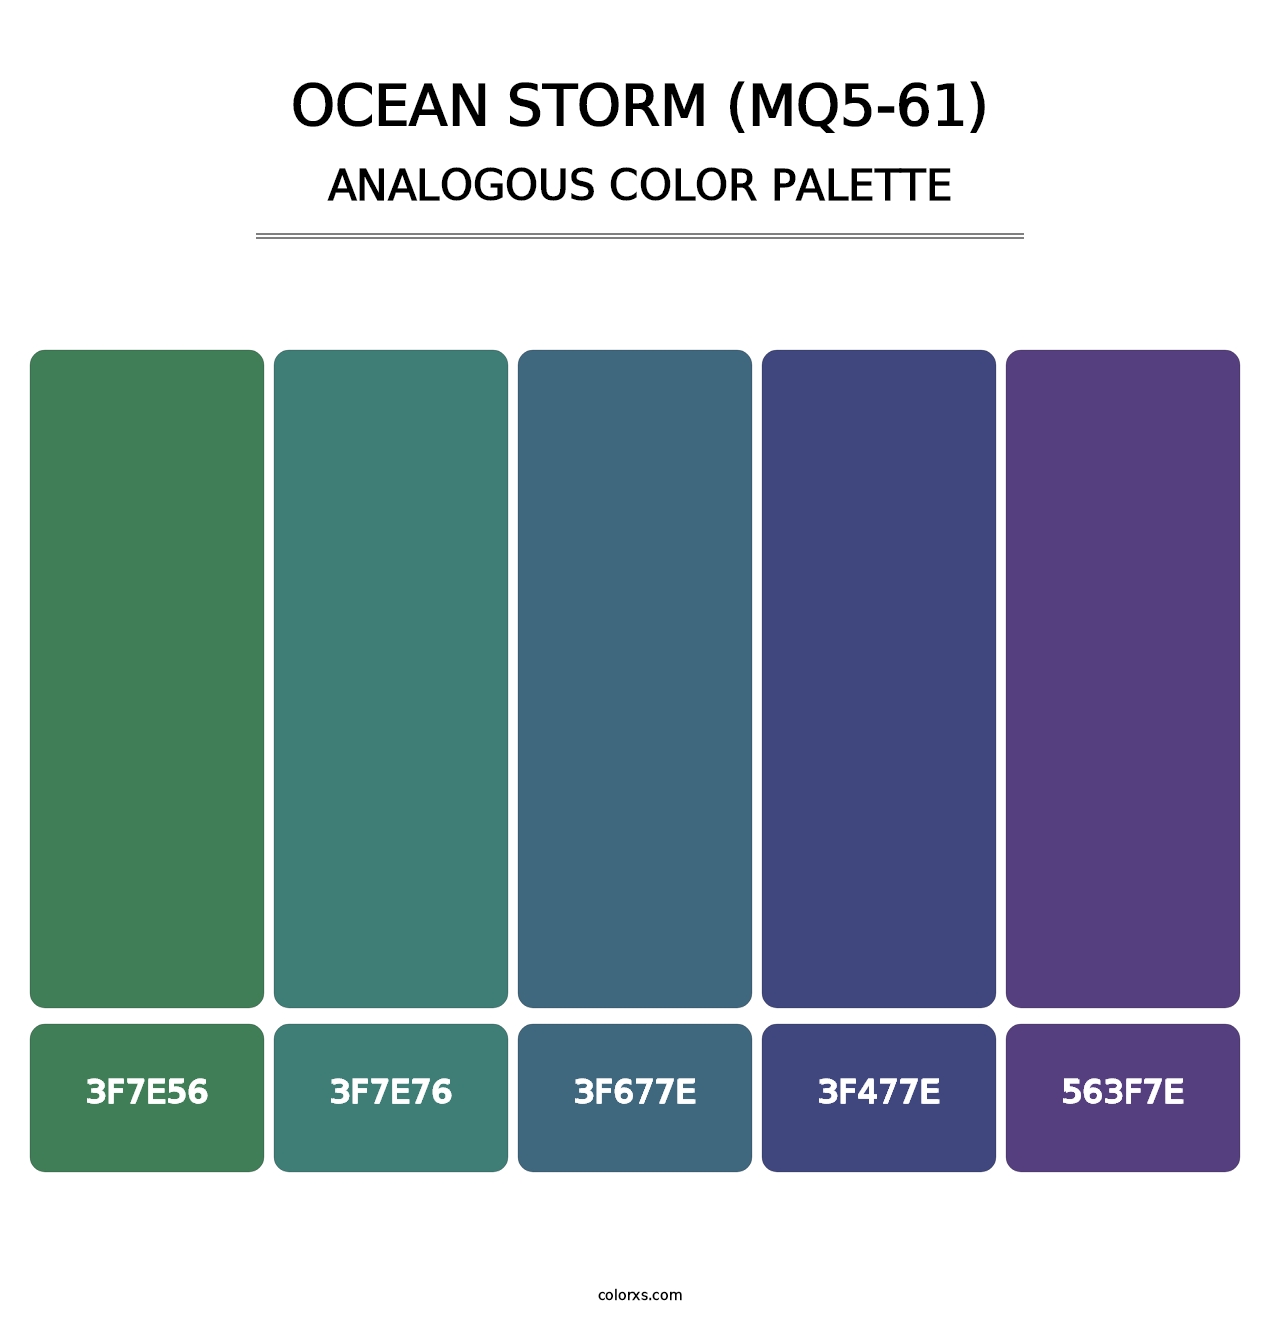 Ocean Storm (MQ5-61) - Analogous Color Palette